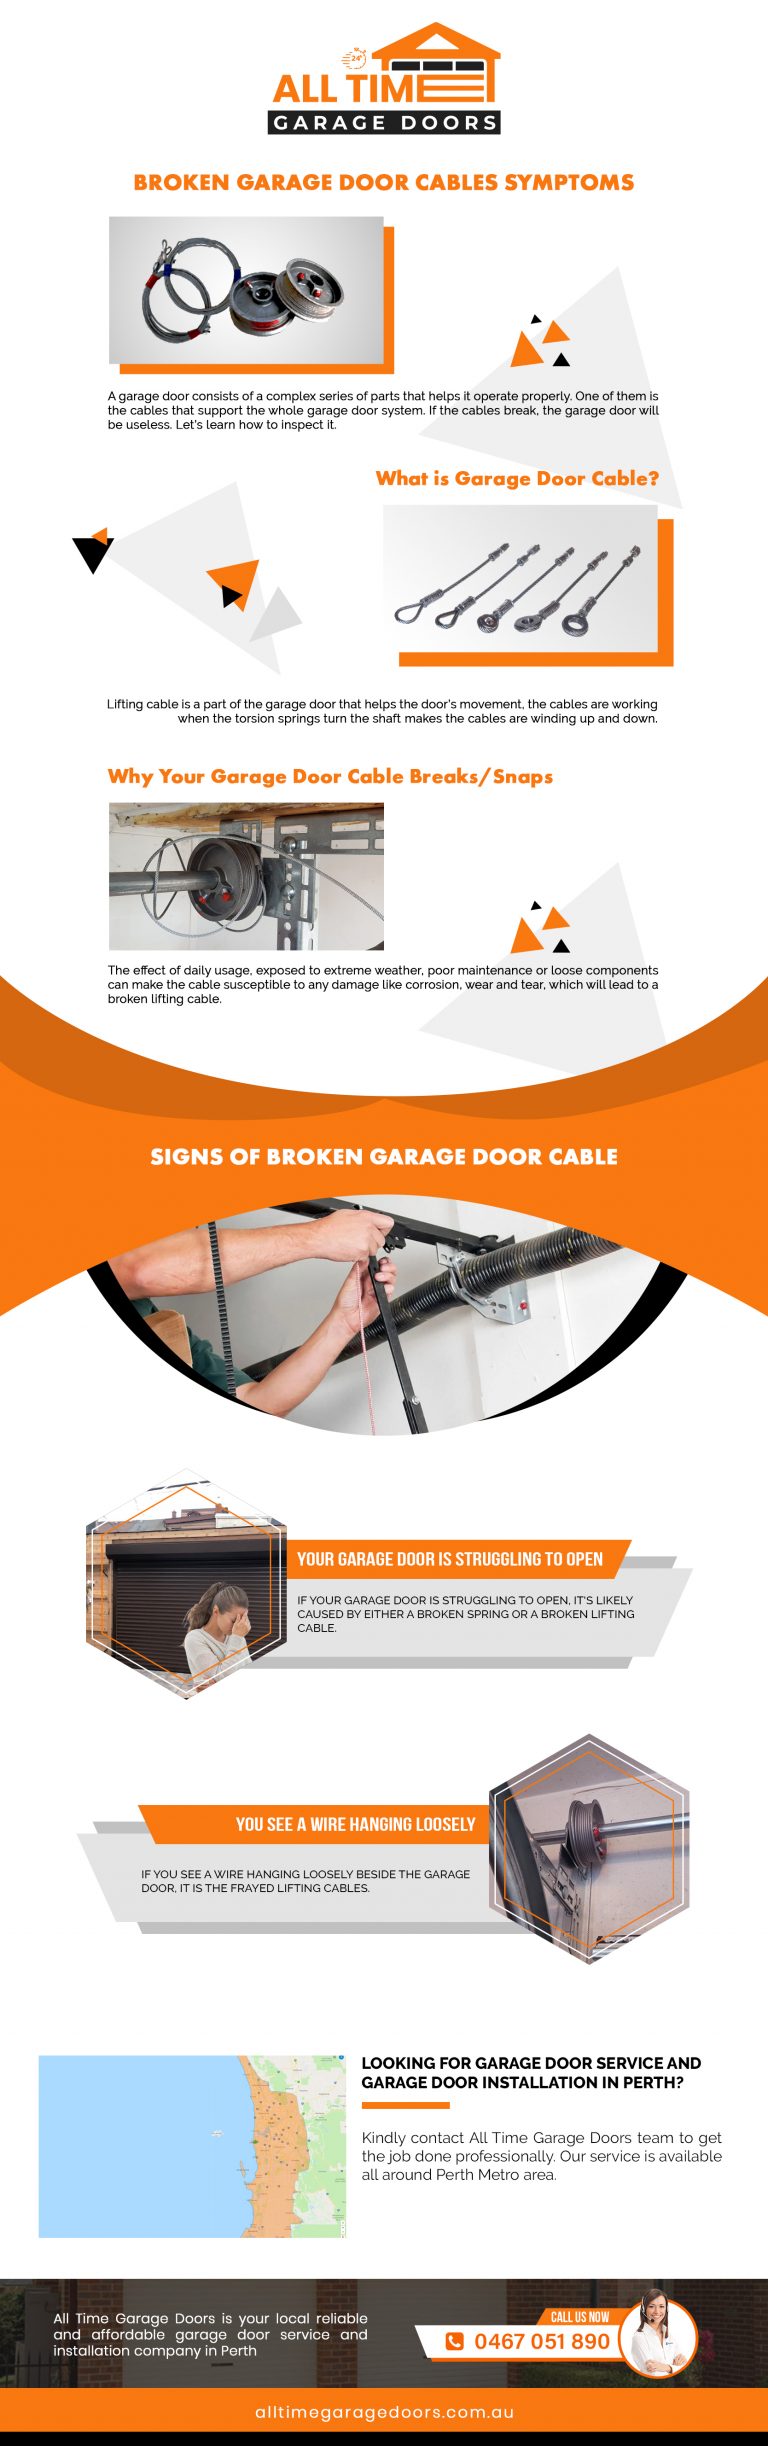 Broken Garage Door Cables Symptoms - Broken Garage Door Cables Symptoms Infographic 1 768x2446